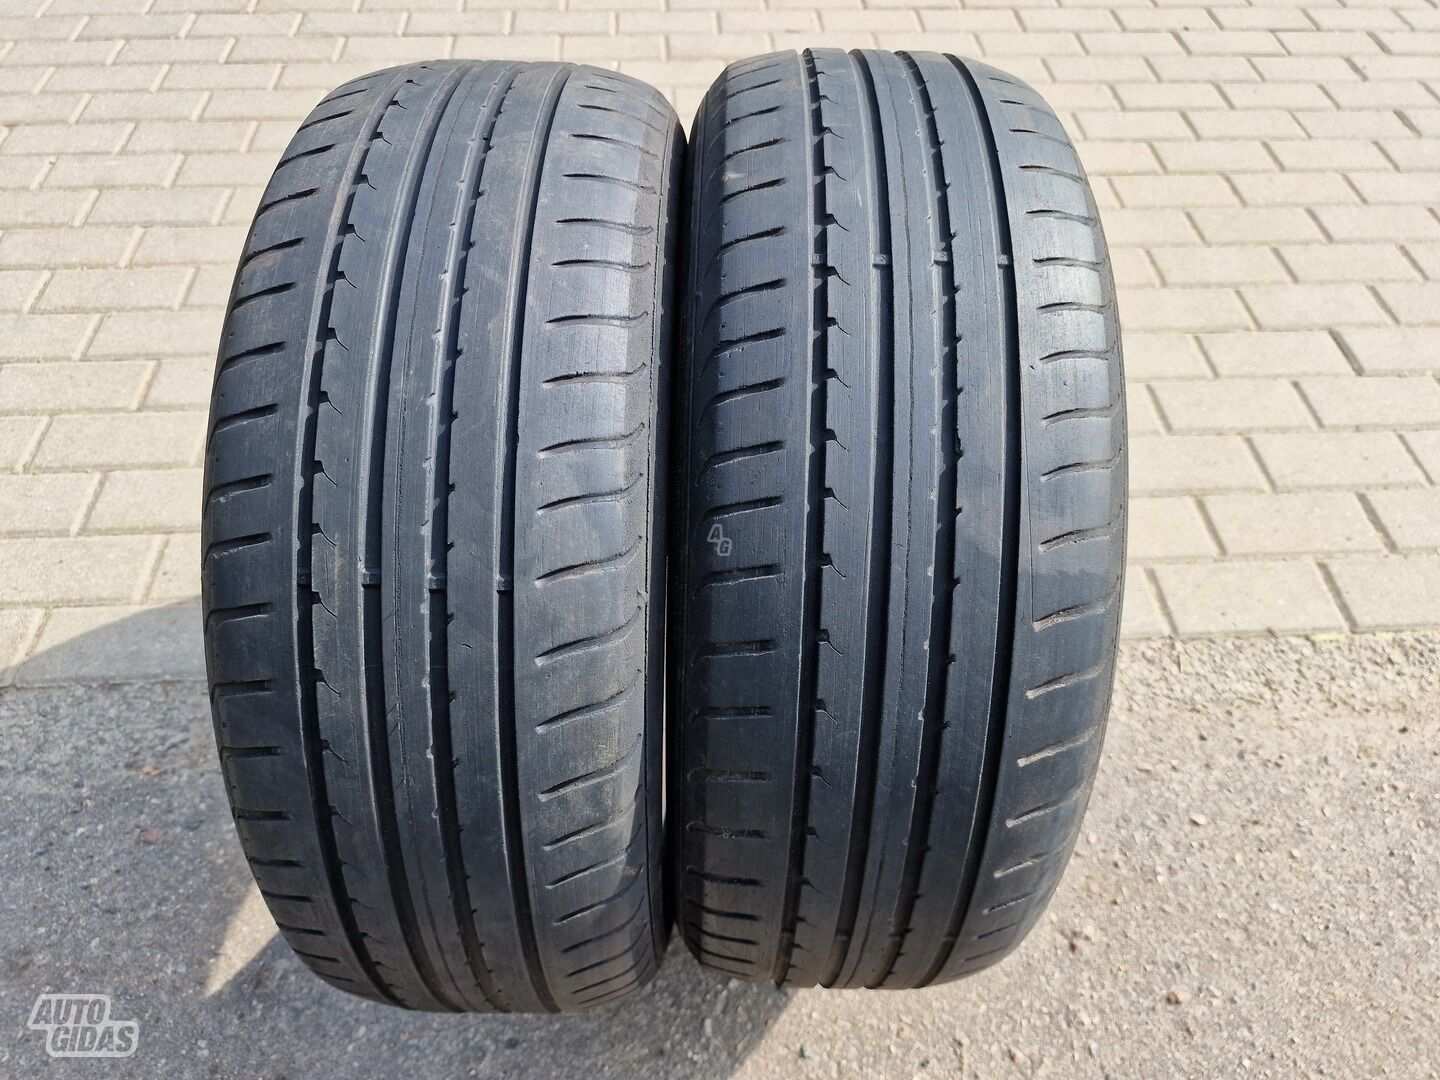 Goodyear EfficientGrip R16 summer tyres passanger car